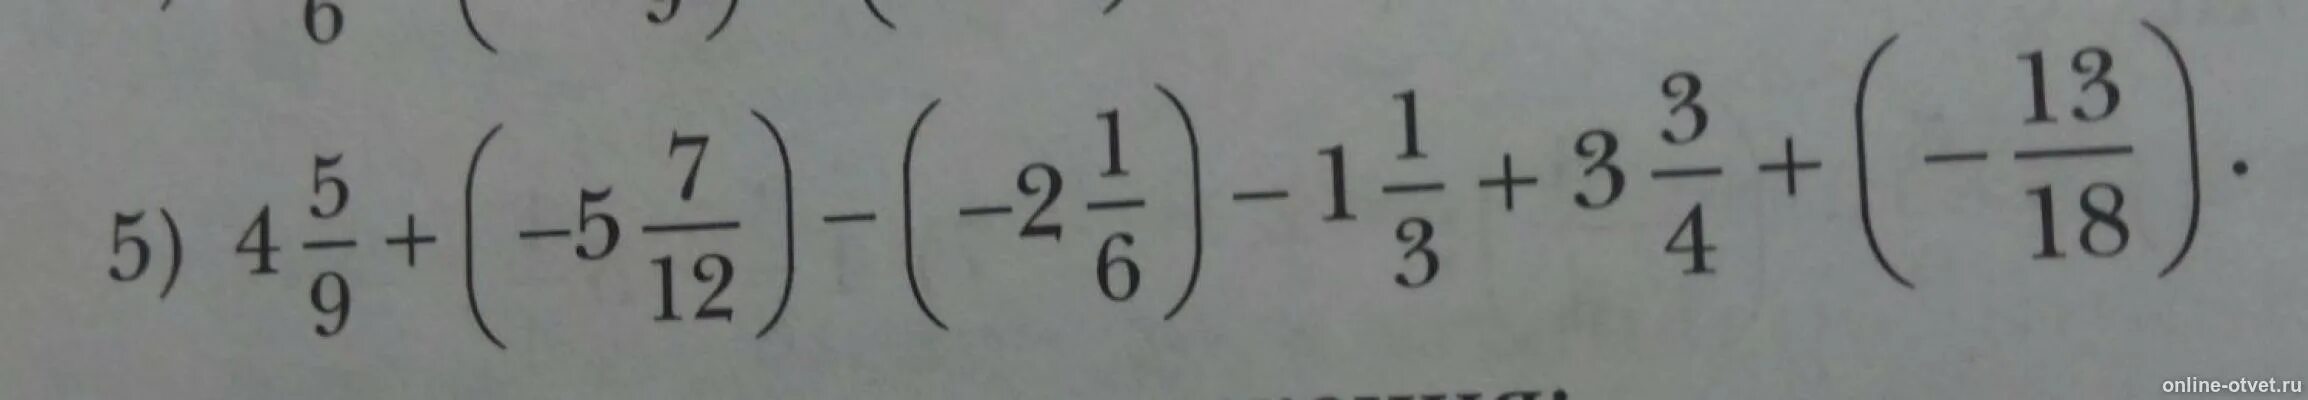 1 3x 7 18. 4,5/9+(-5,7/12)-(2,1/6)-1,1/3+3,3/4+(-13/18). Одна пять шестых +4+(-2 1/12. 1 5/6+4+ -2 1/12. 5 1/3 : 6 2/5 + (12:3 3/5 2-3) 2/3 Решение.